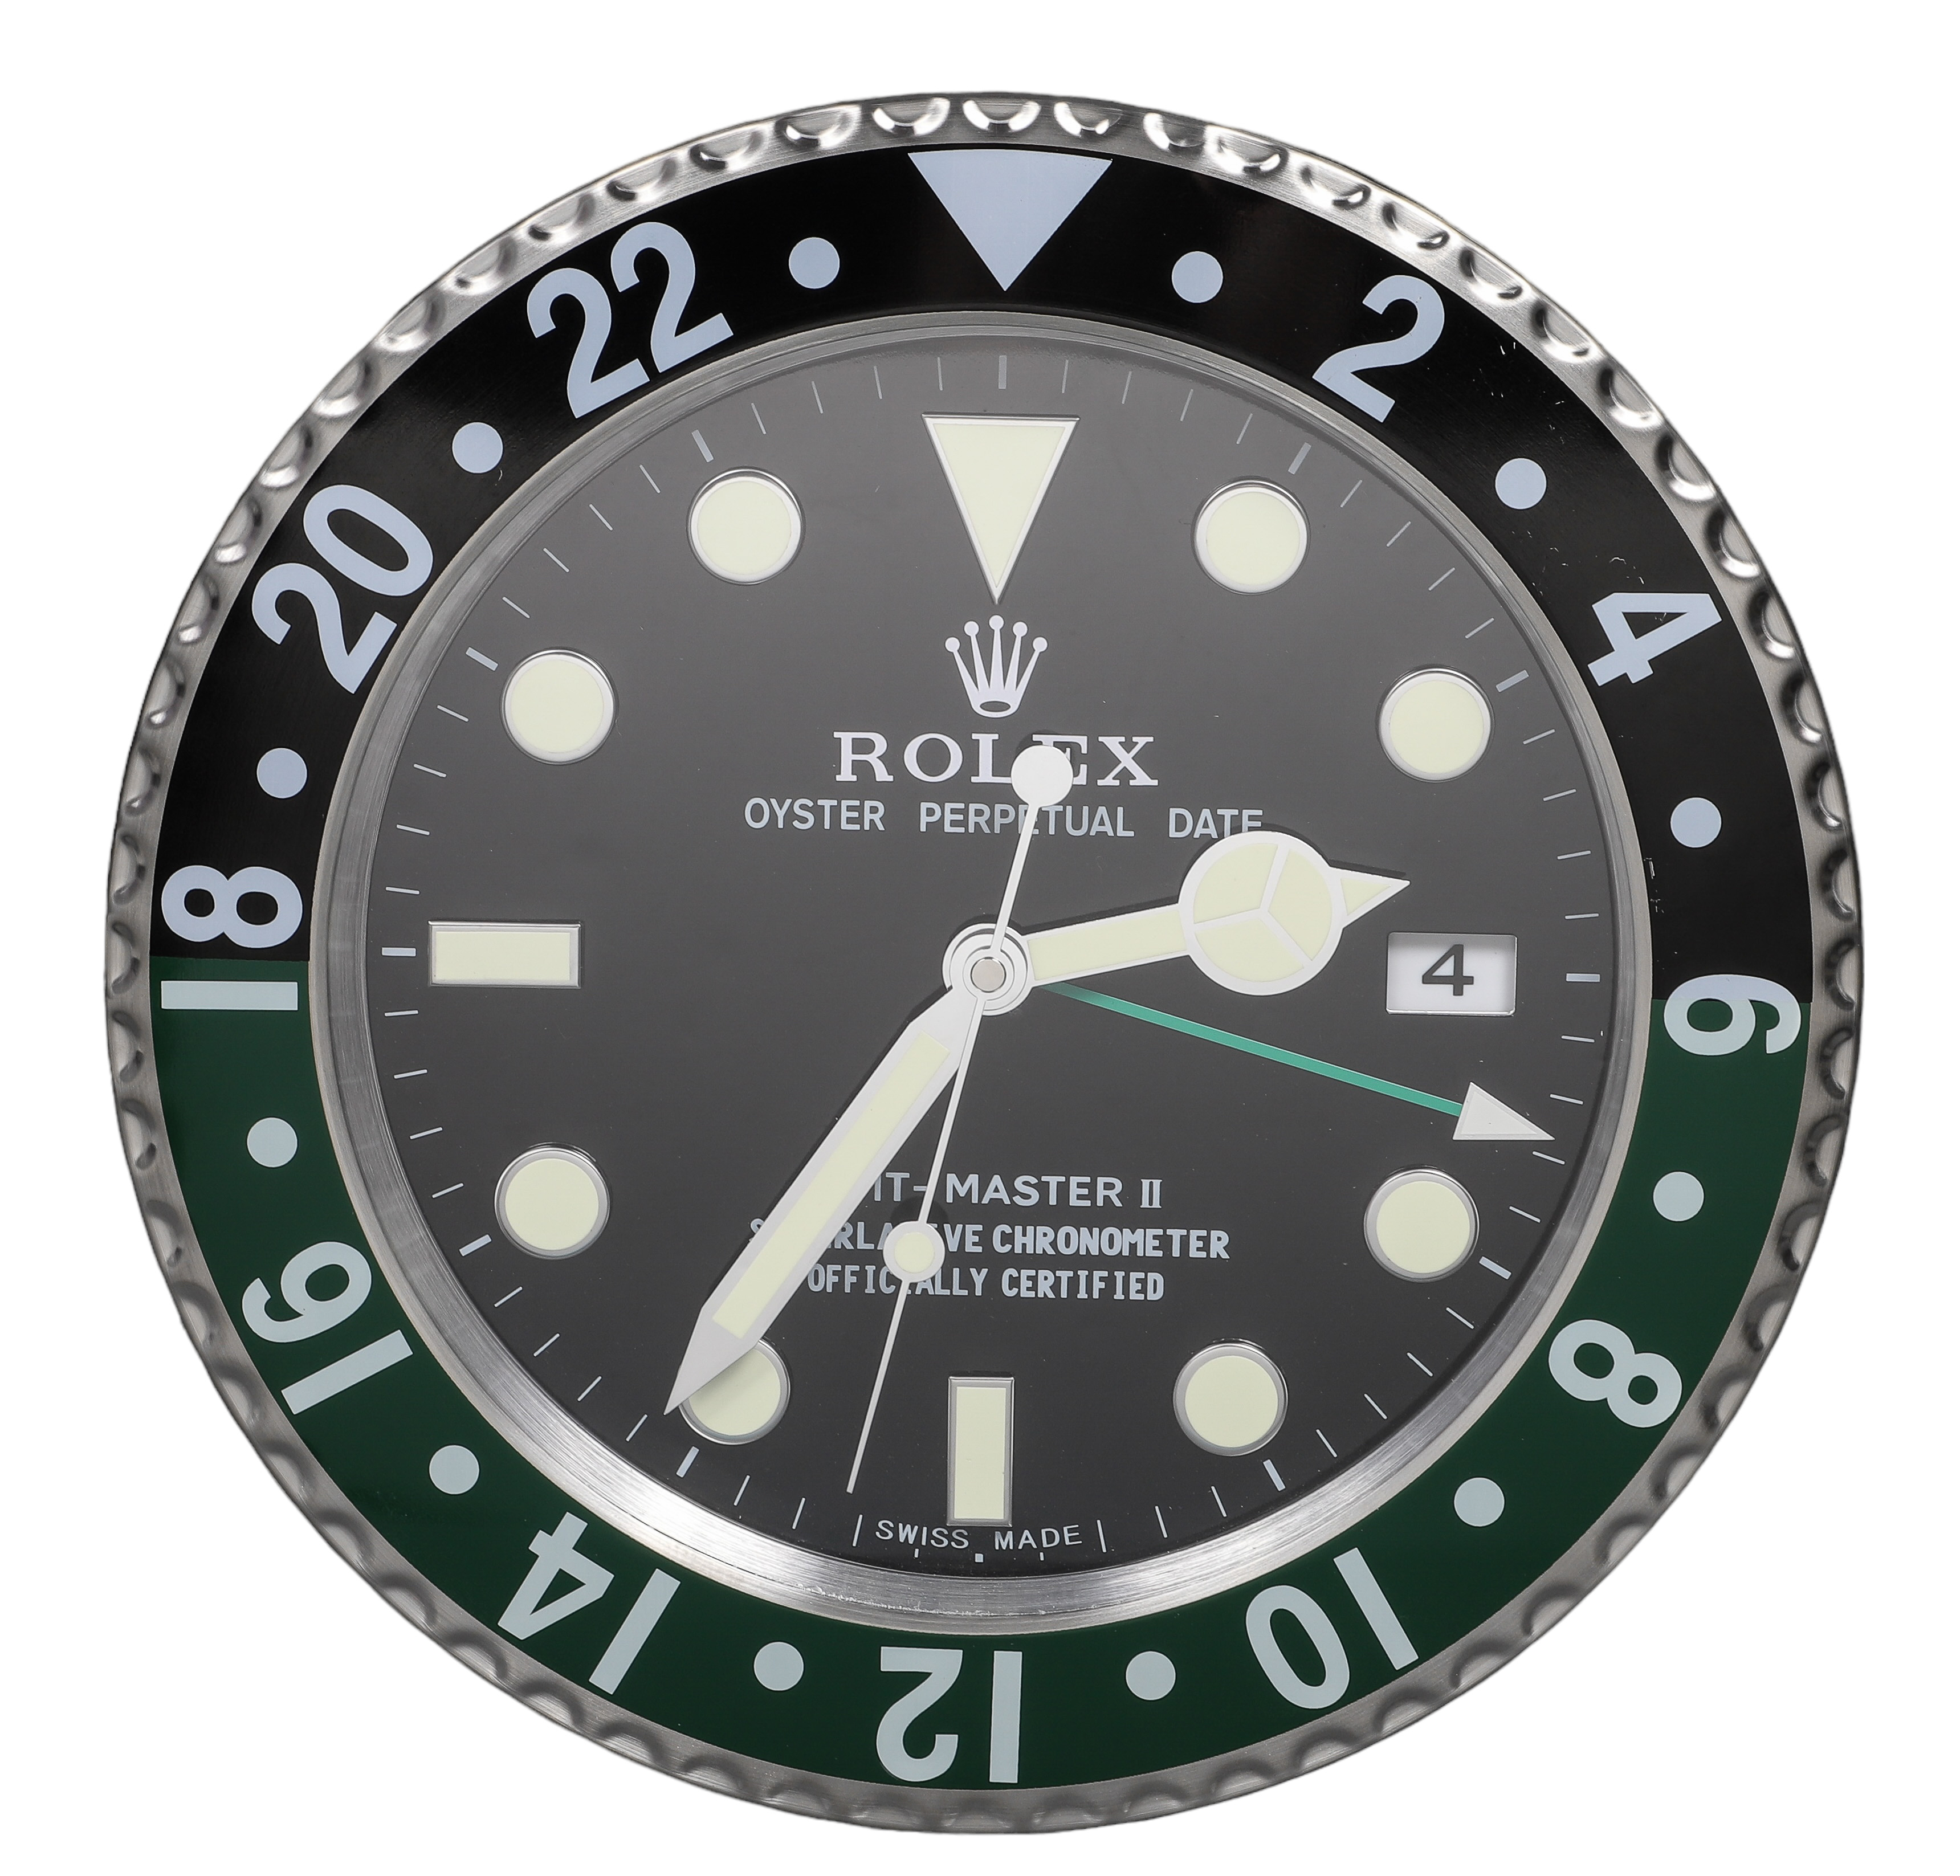 Watch Dealer Display Clock Rolex 2e1c2a